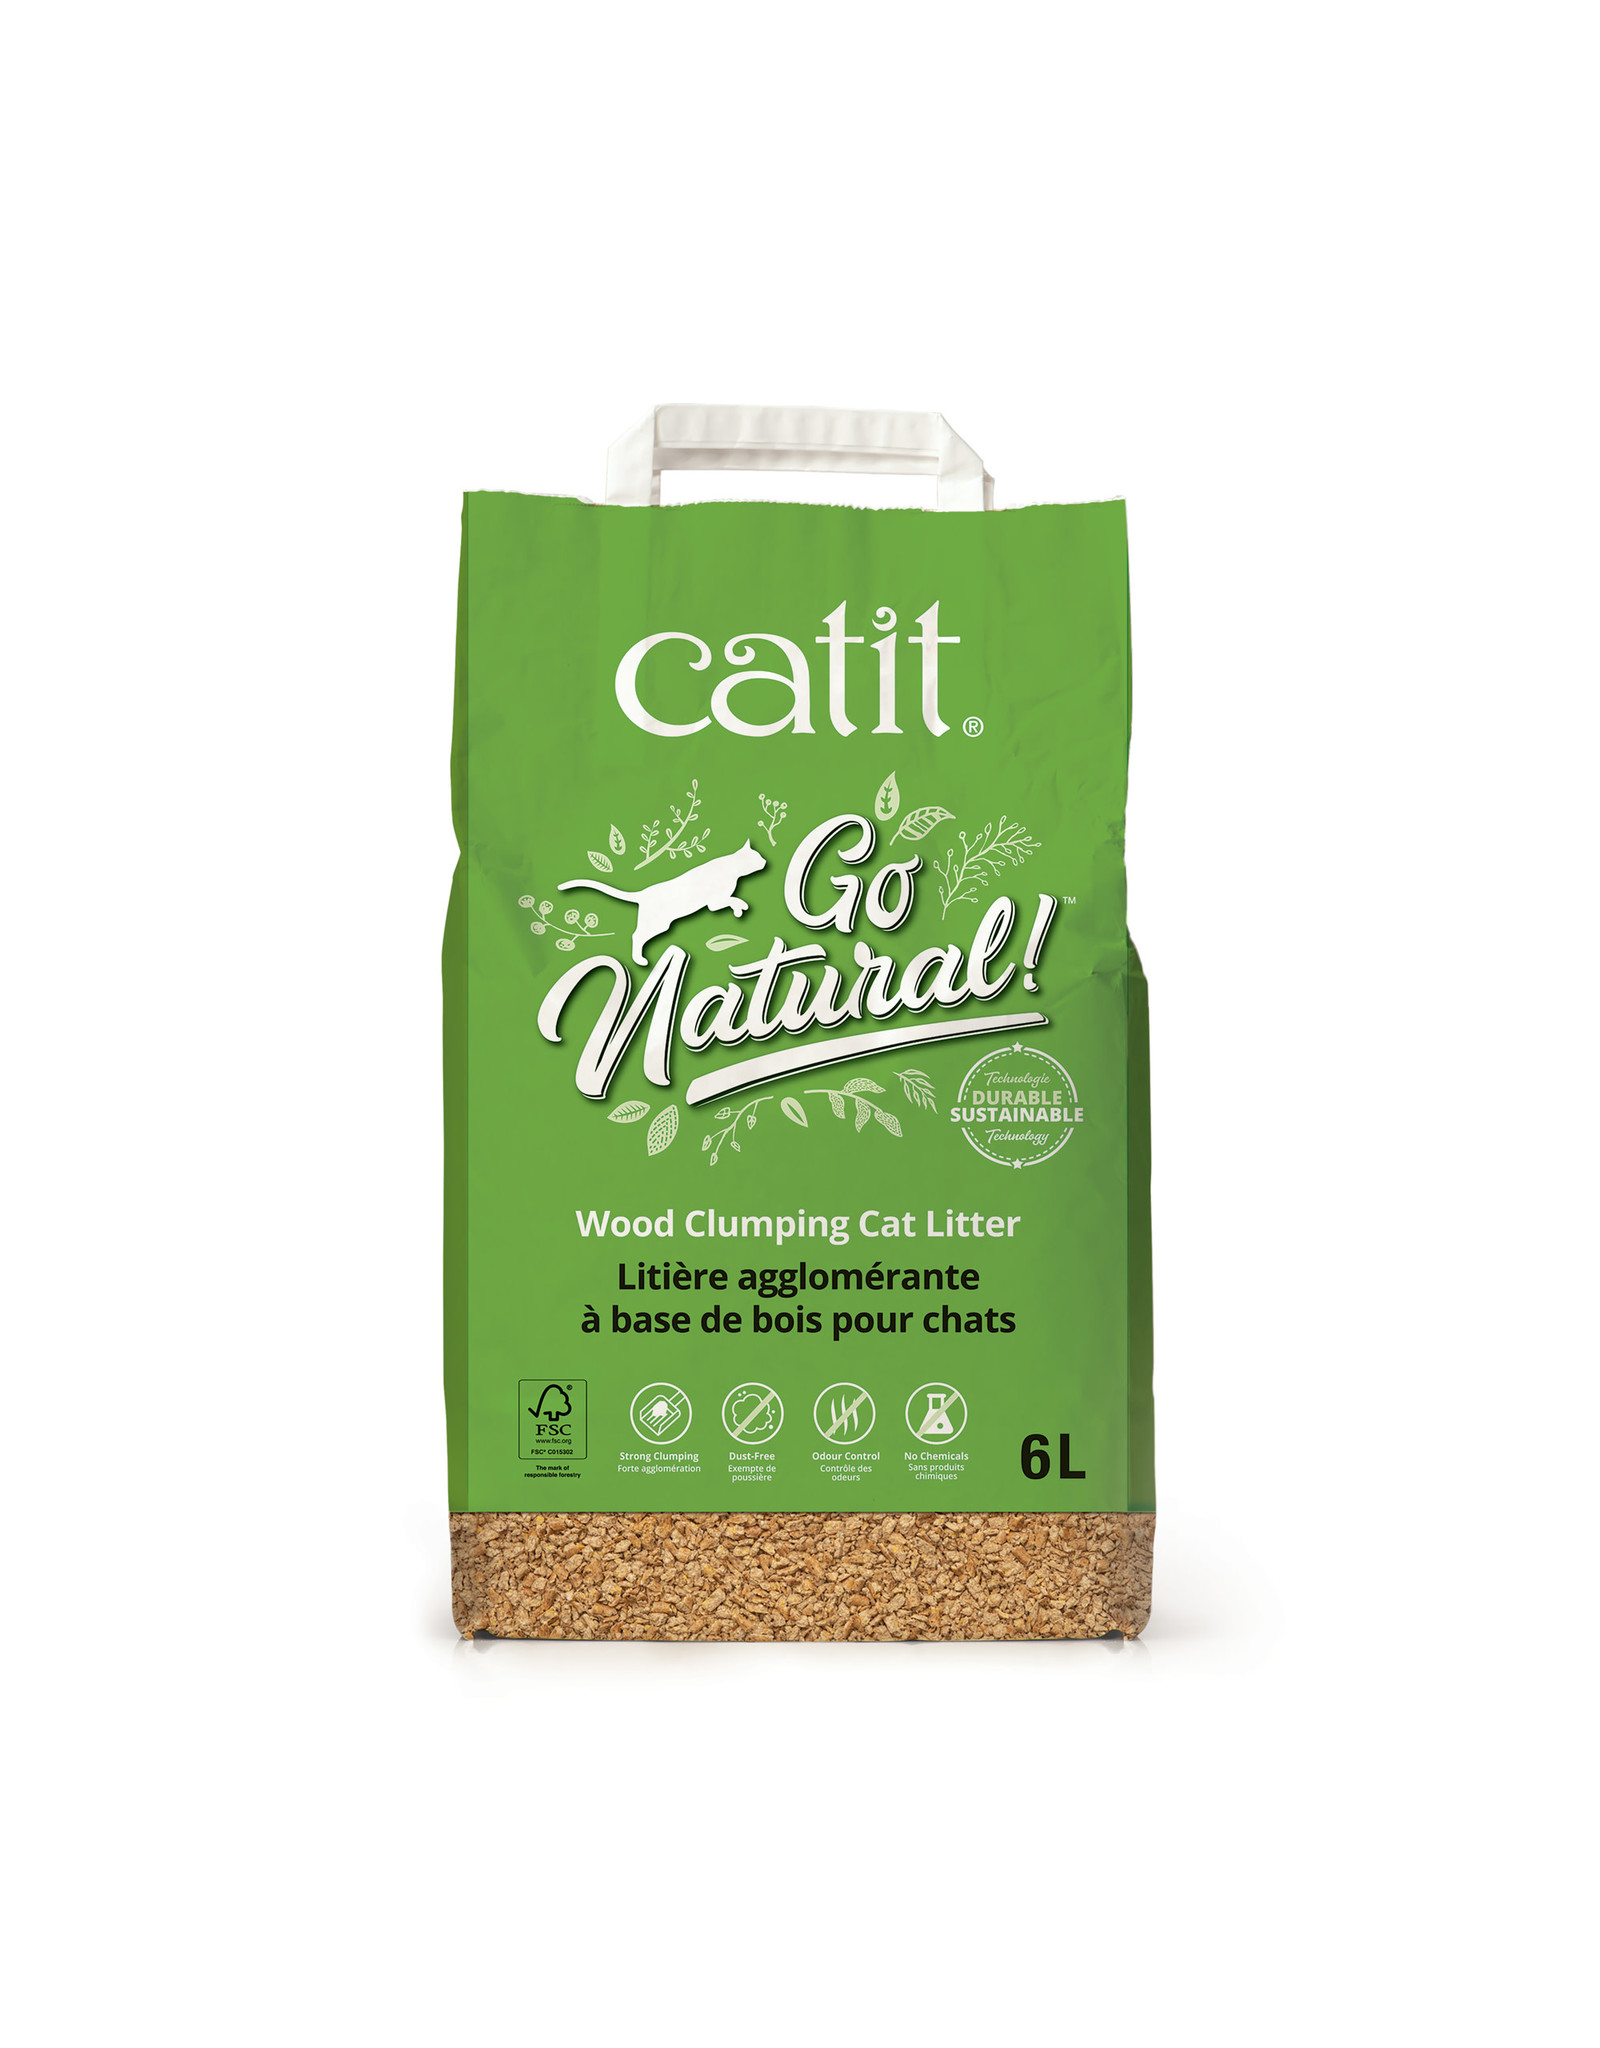 CatIt Go Natural! Wood Clumping Cat Litter 6L